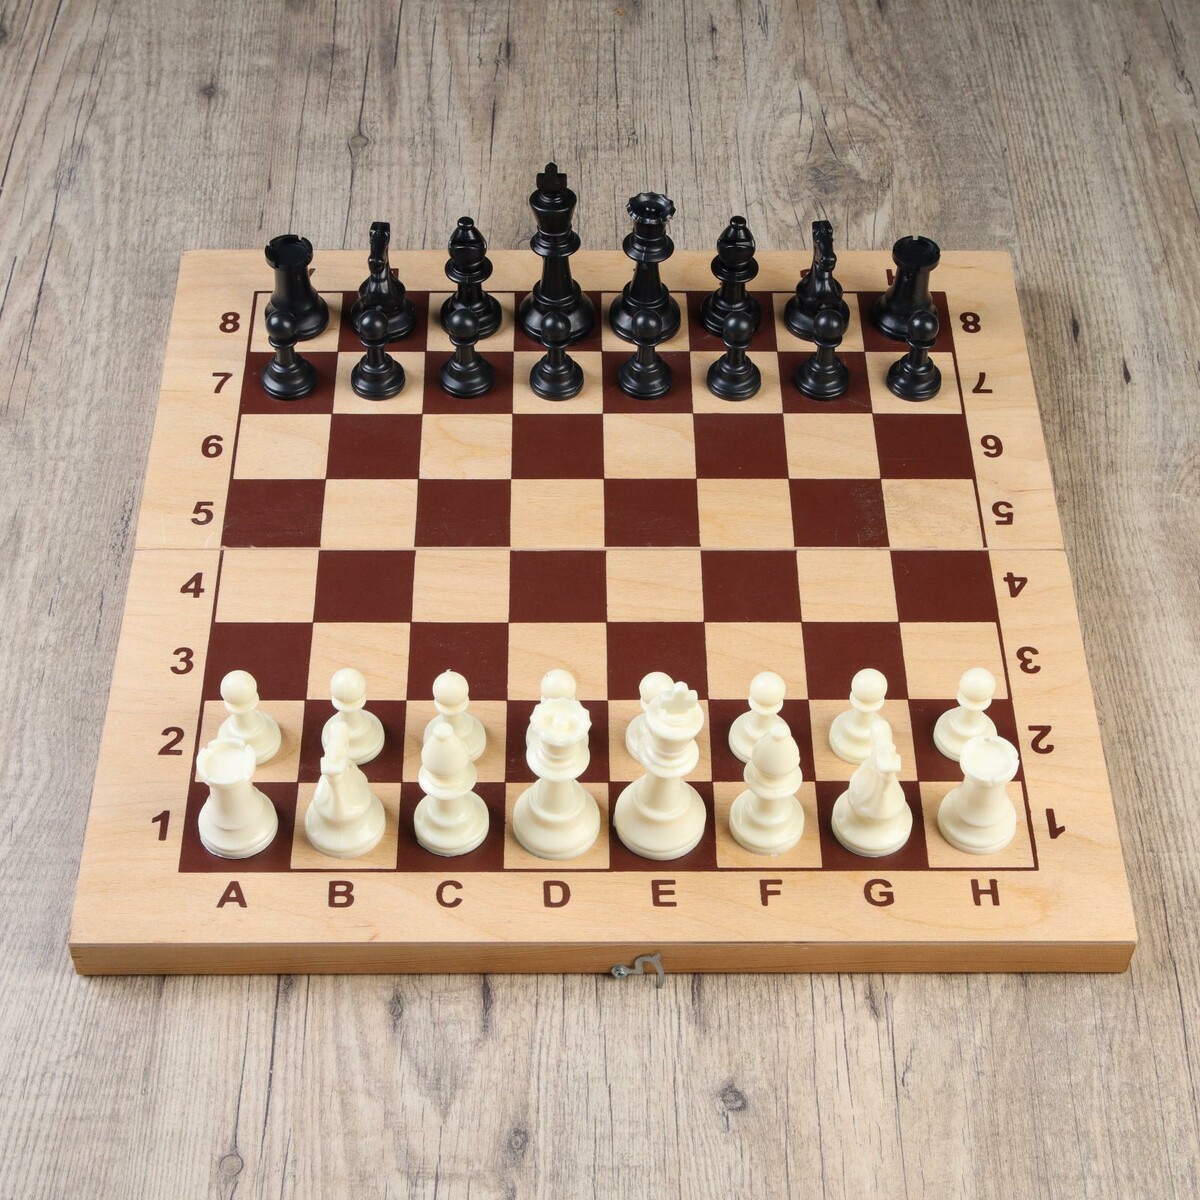 Шахматные фигуры, пластик, король h-9.5 см, пешка h-4.5 см шахматные фигуры гроссмейстерские